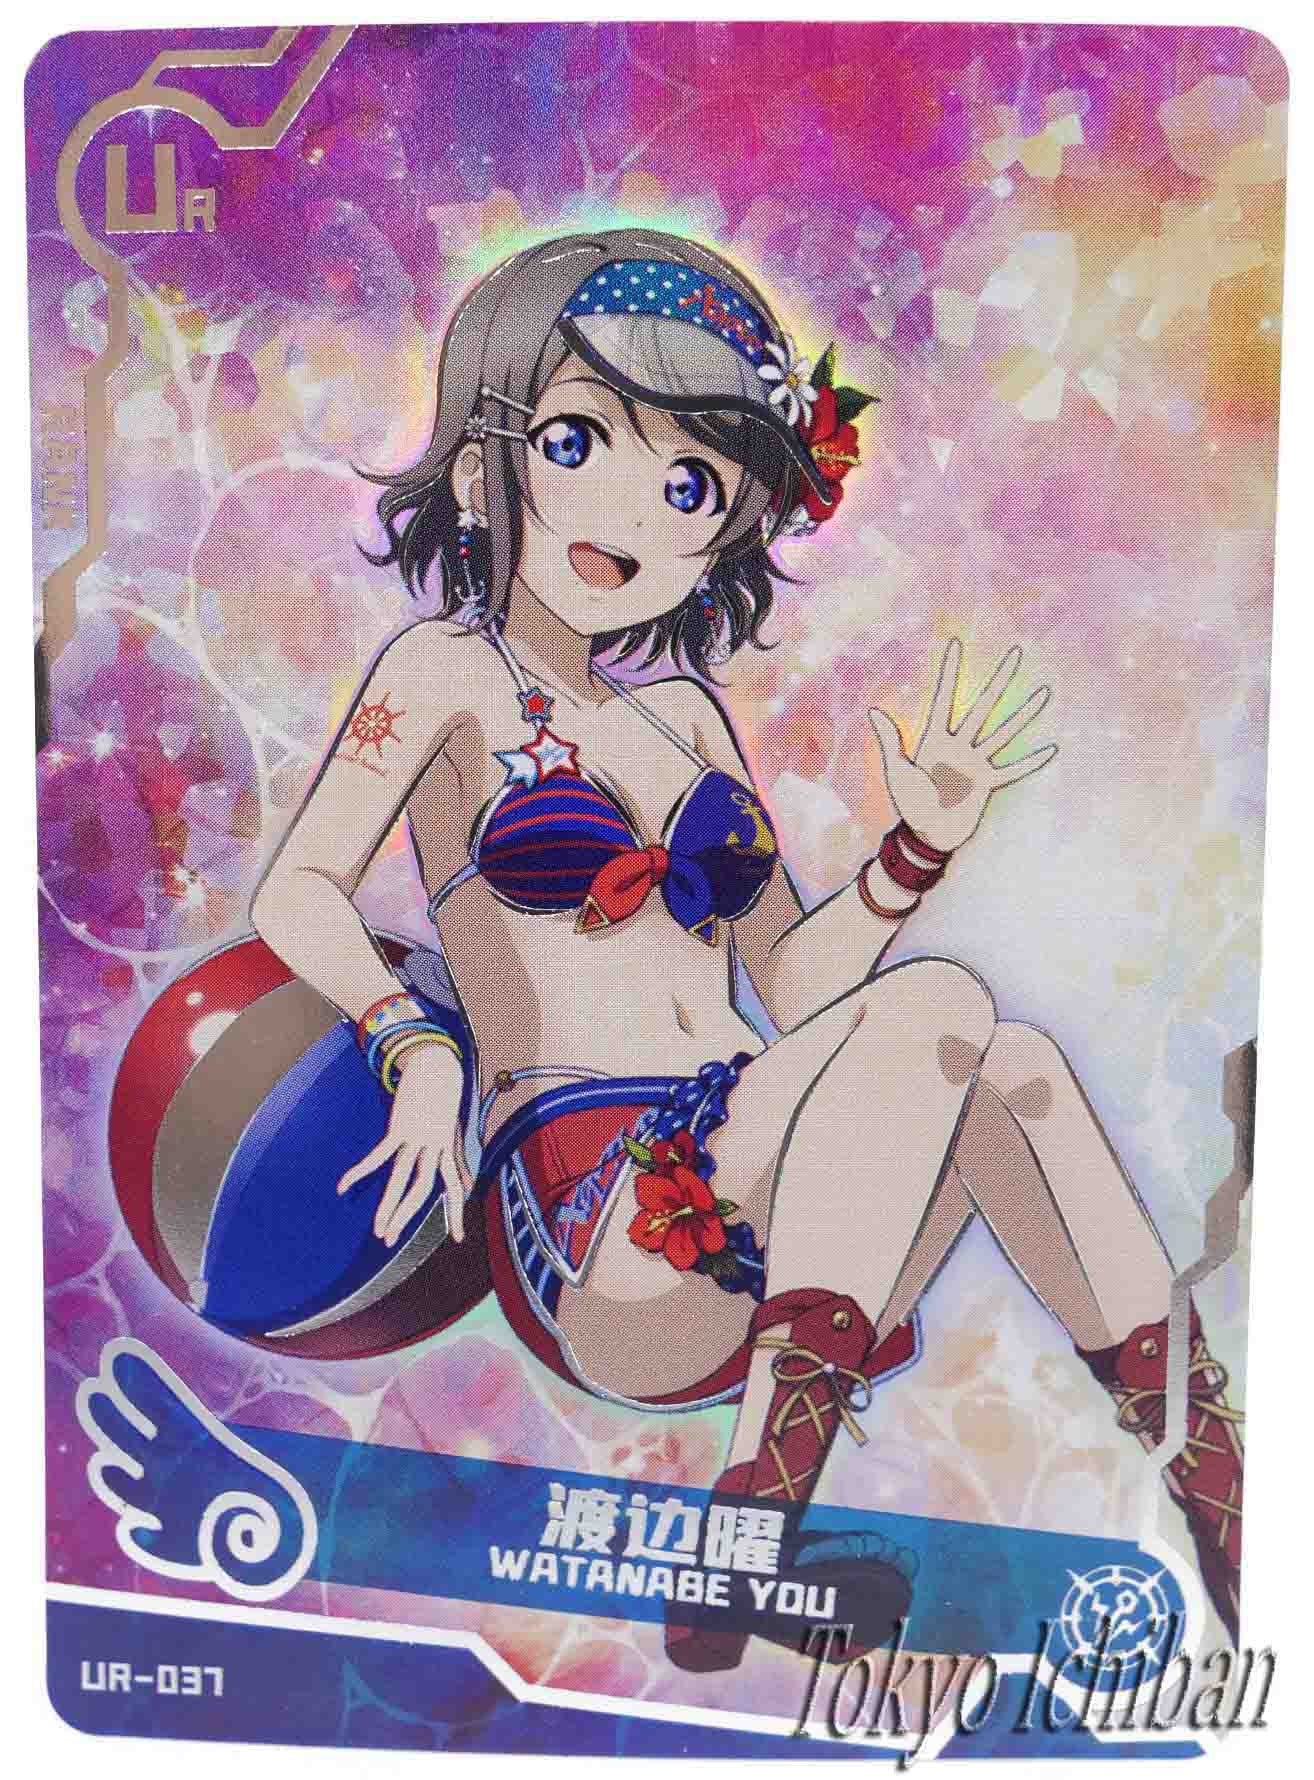 Doujin Card Love Live! You Watanabe Goddess Story UR-037